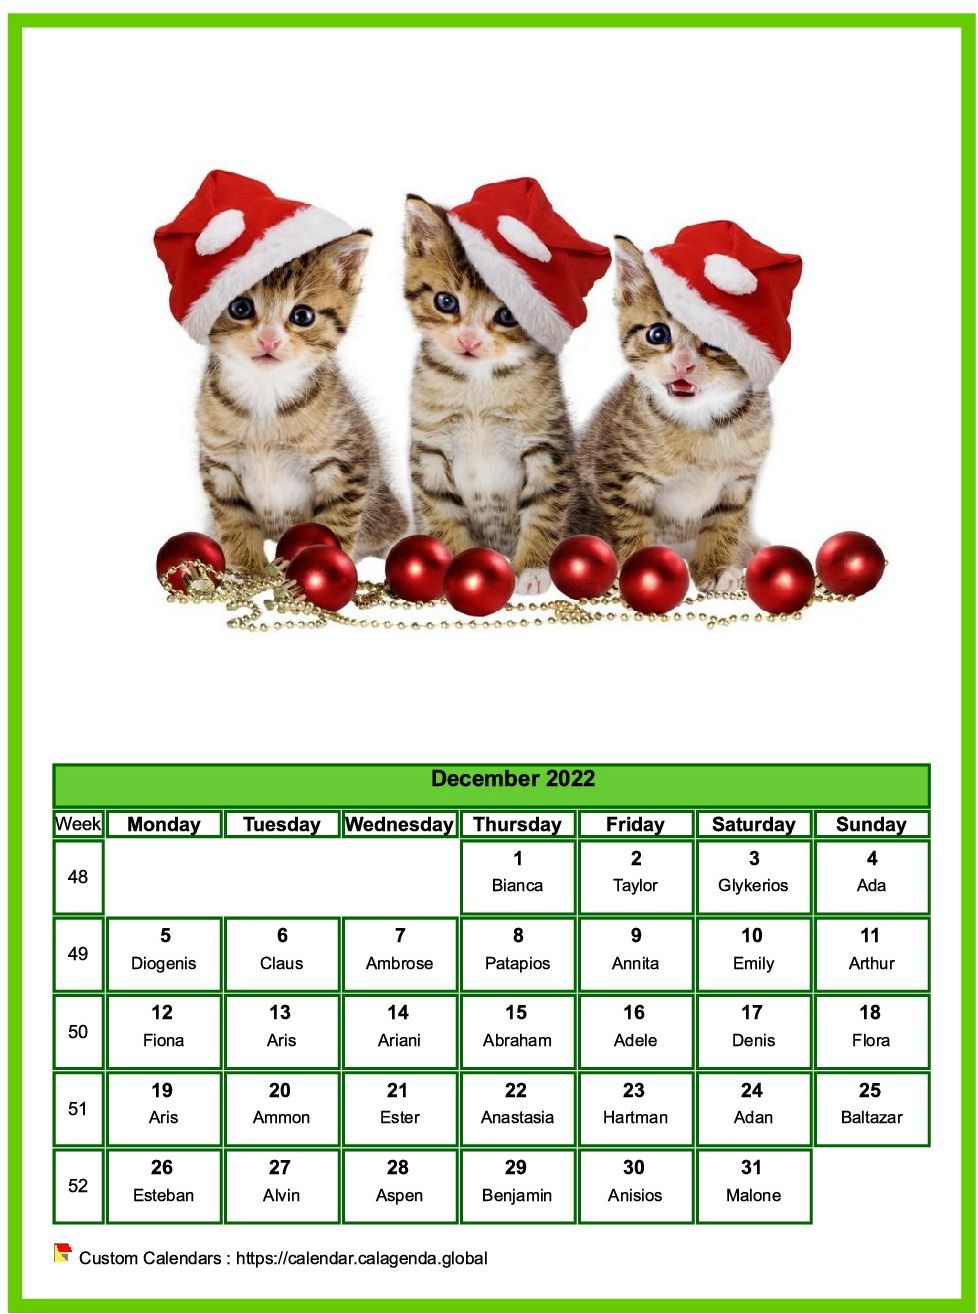 Calendar december 2022 cats